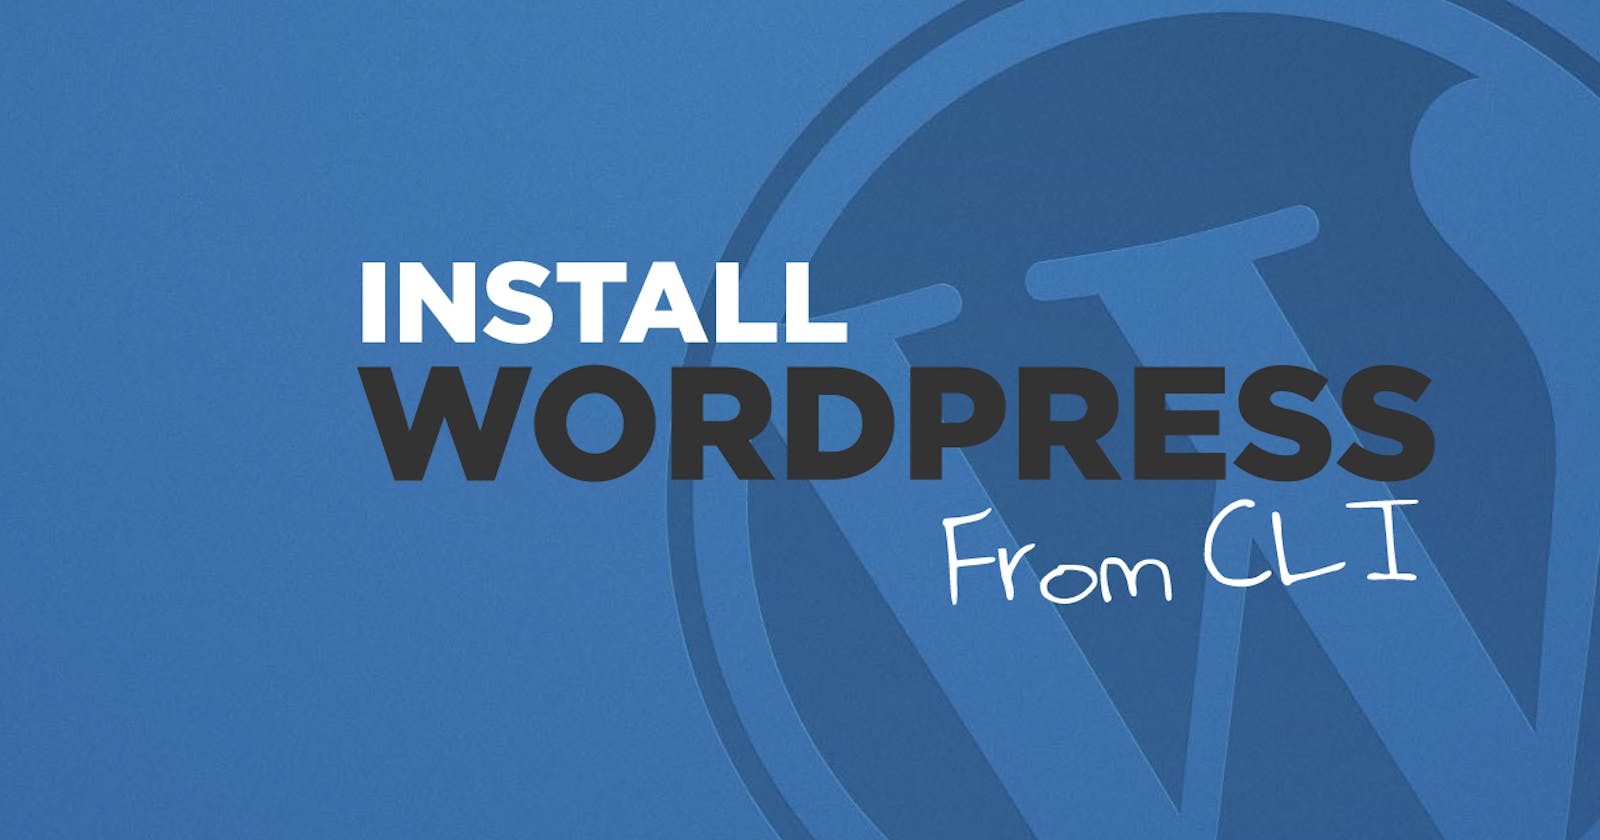 Install WordPress from CLI